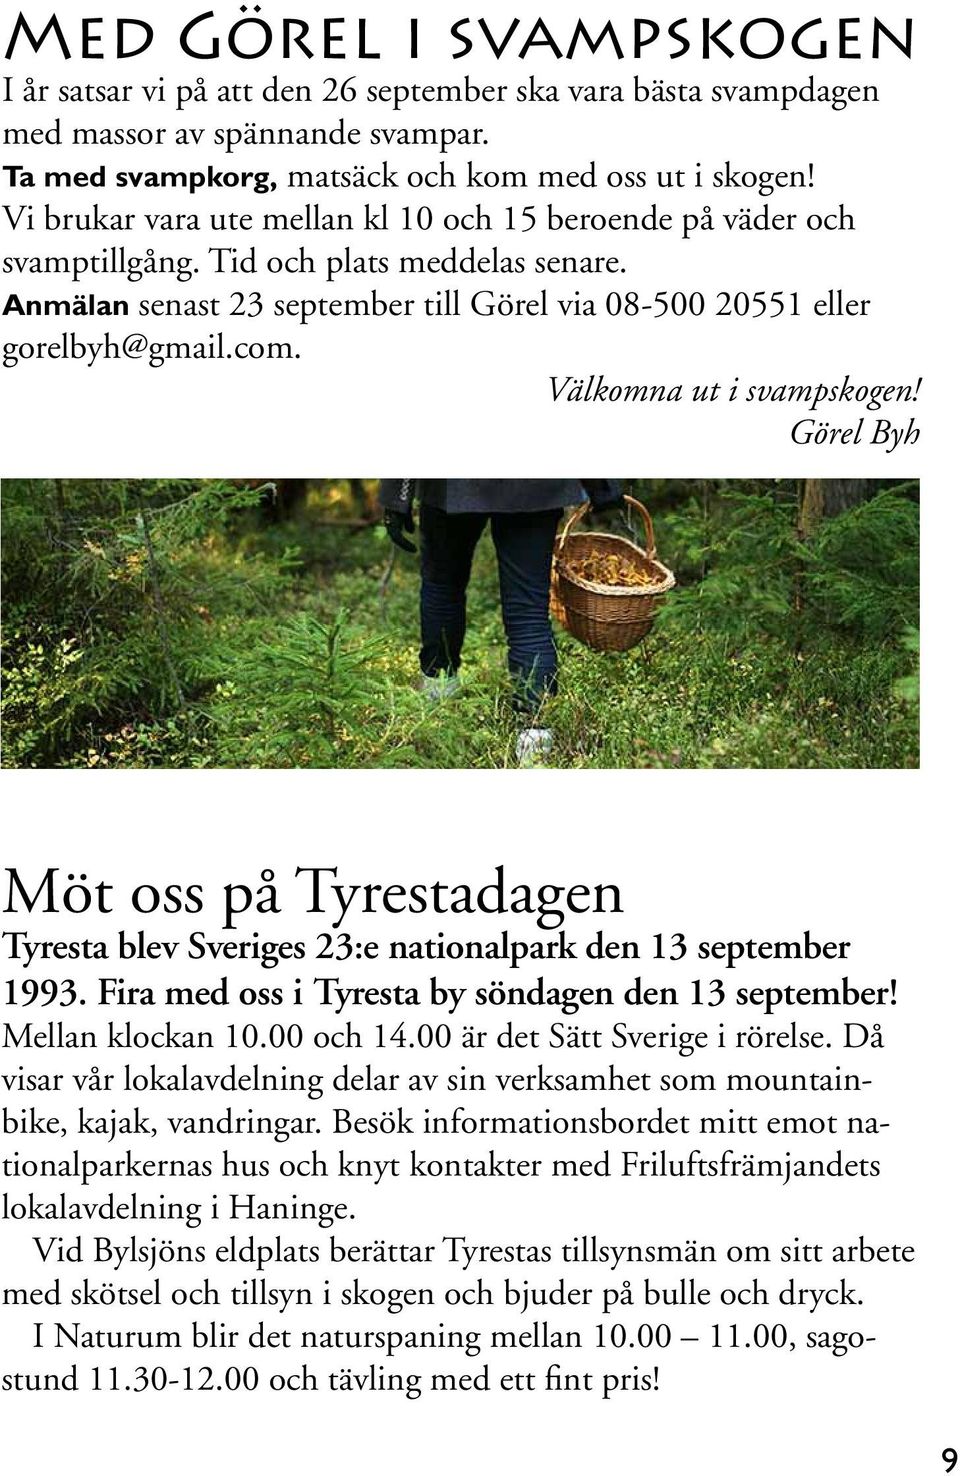 Välkomna ut i svampskogen! Görel Byh Möt oss på Tyrestadagen Tyresta blev Sveriges 23:e nationalpark den 13 september 1993. Fira med oss i Tyresta by söndagen den 13 september! Mellan klockan 10.